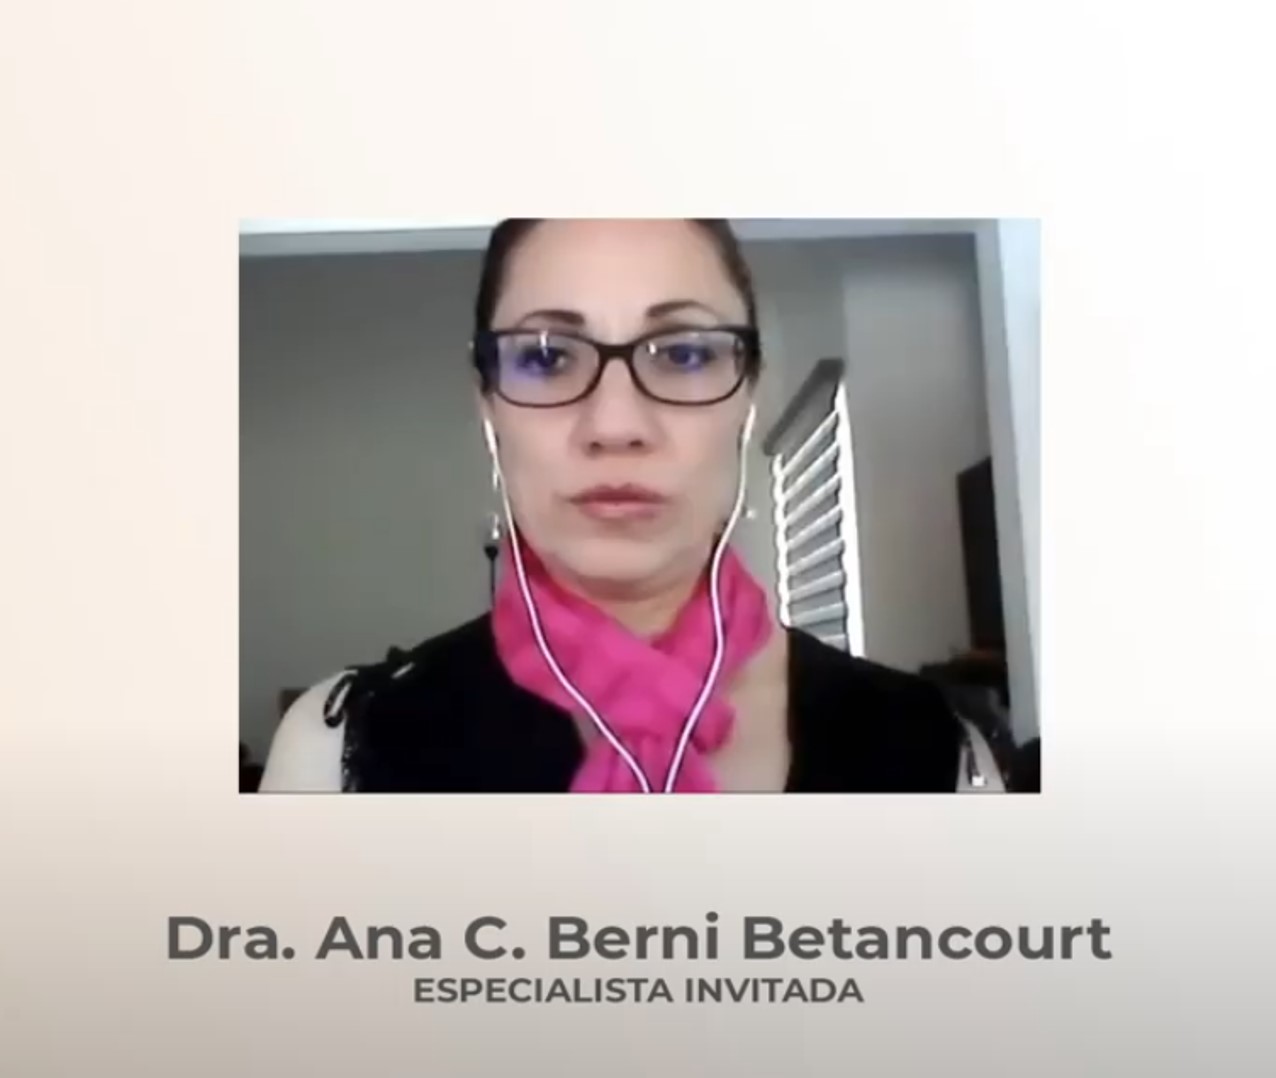 Dra. Ana Berni Betancourt, Medicina Interna, Cardiología y Electrofisiología cardíaca.